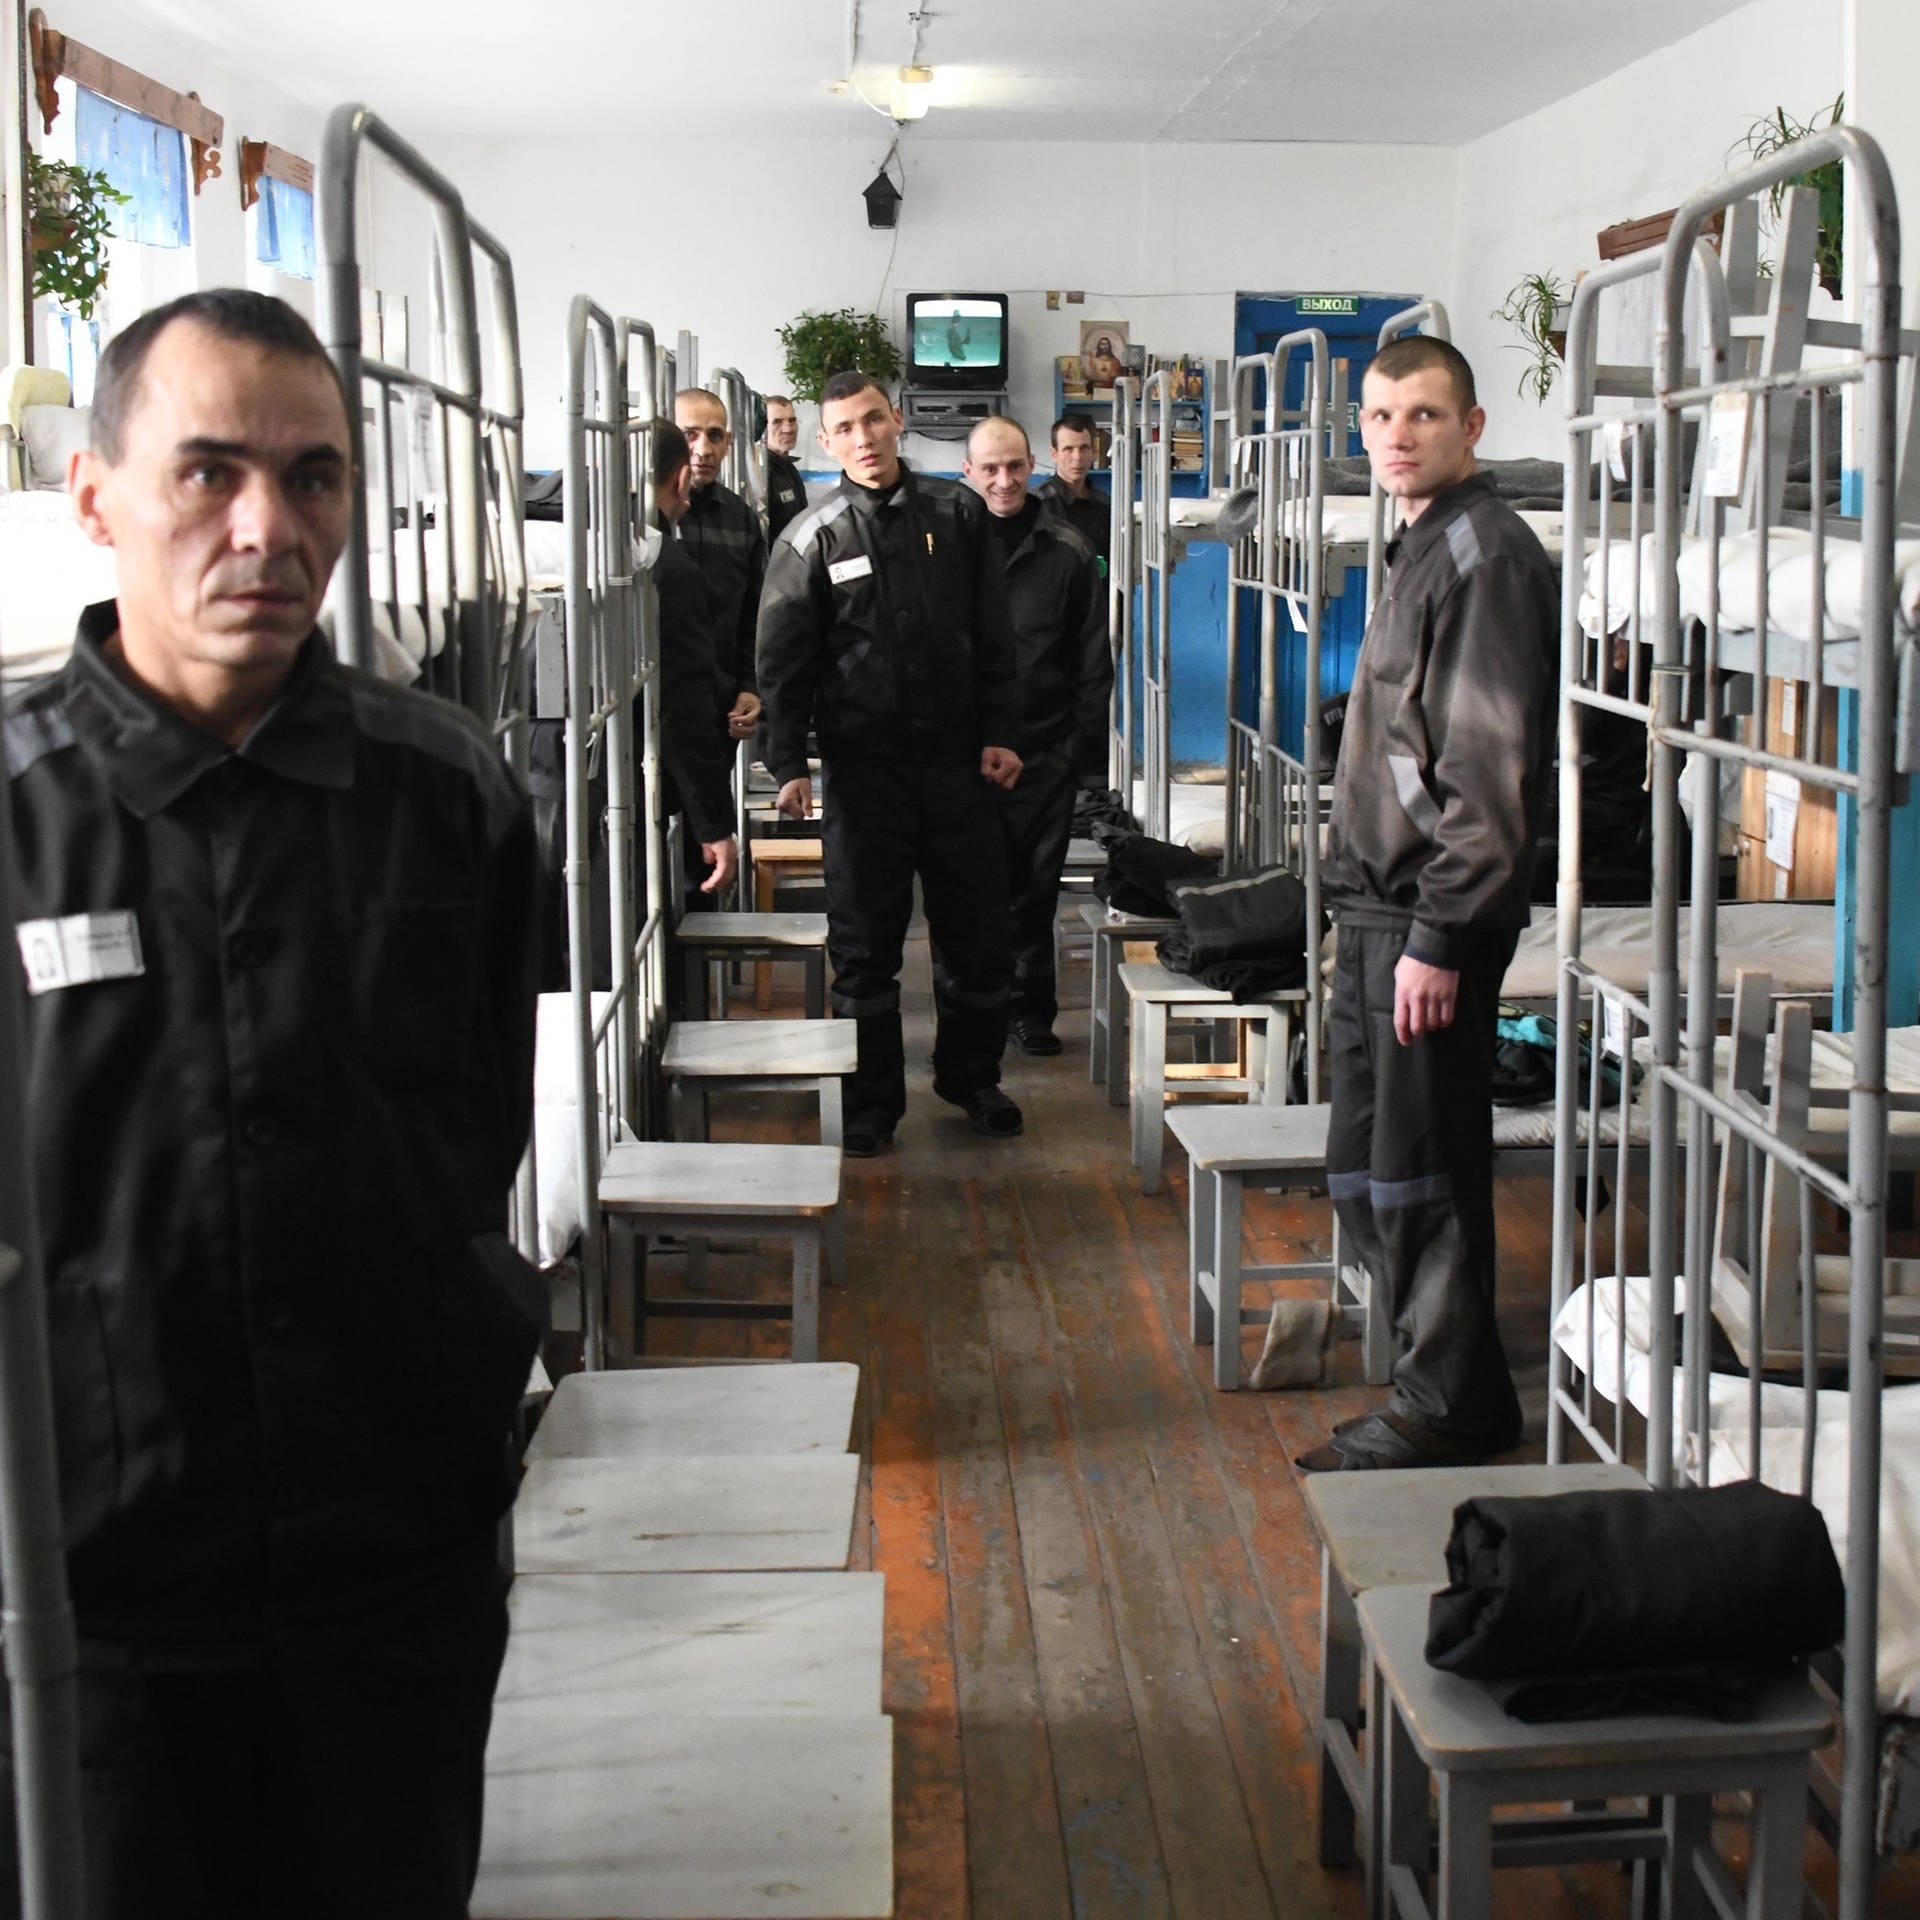 Strafvollzug in Russland – Zwischen Folter und Reform